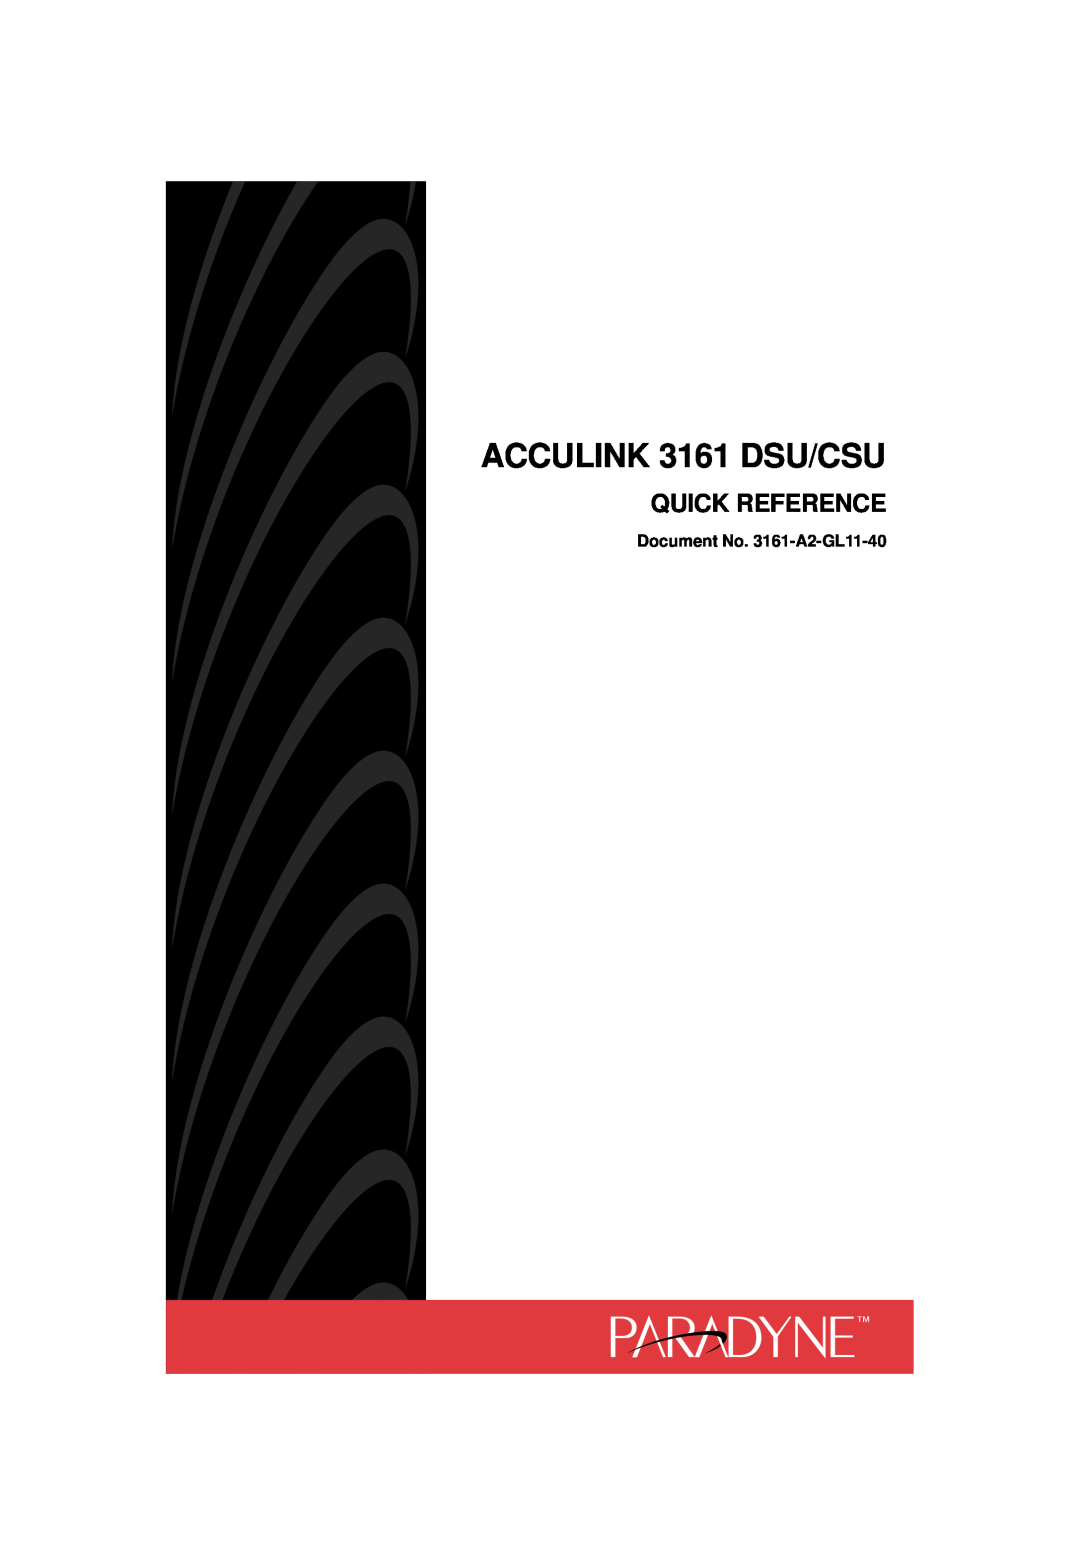 Paradyne 3161 CSU manual ACCULINK 3161 DSU/CSU, Quick Reference, Document No. 3161-A2-GL11-40 